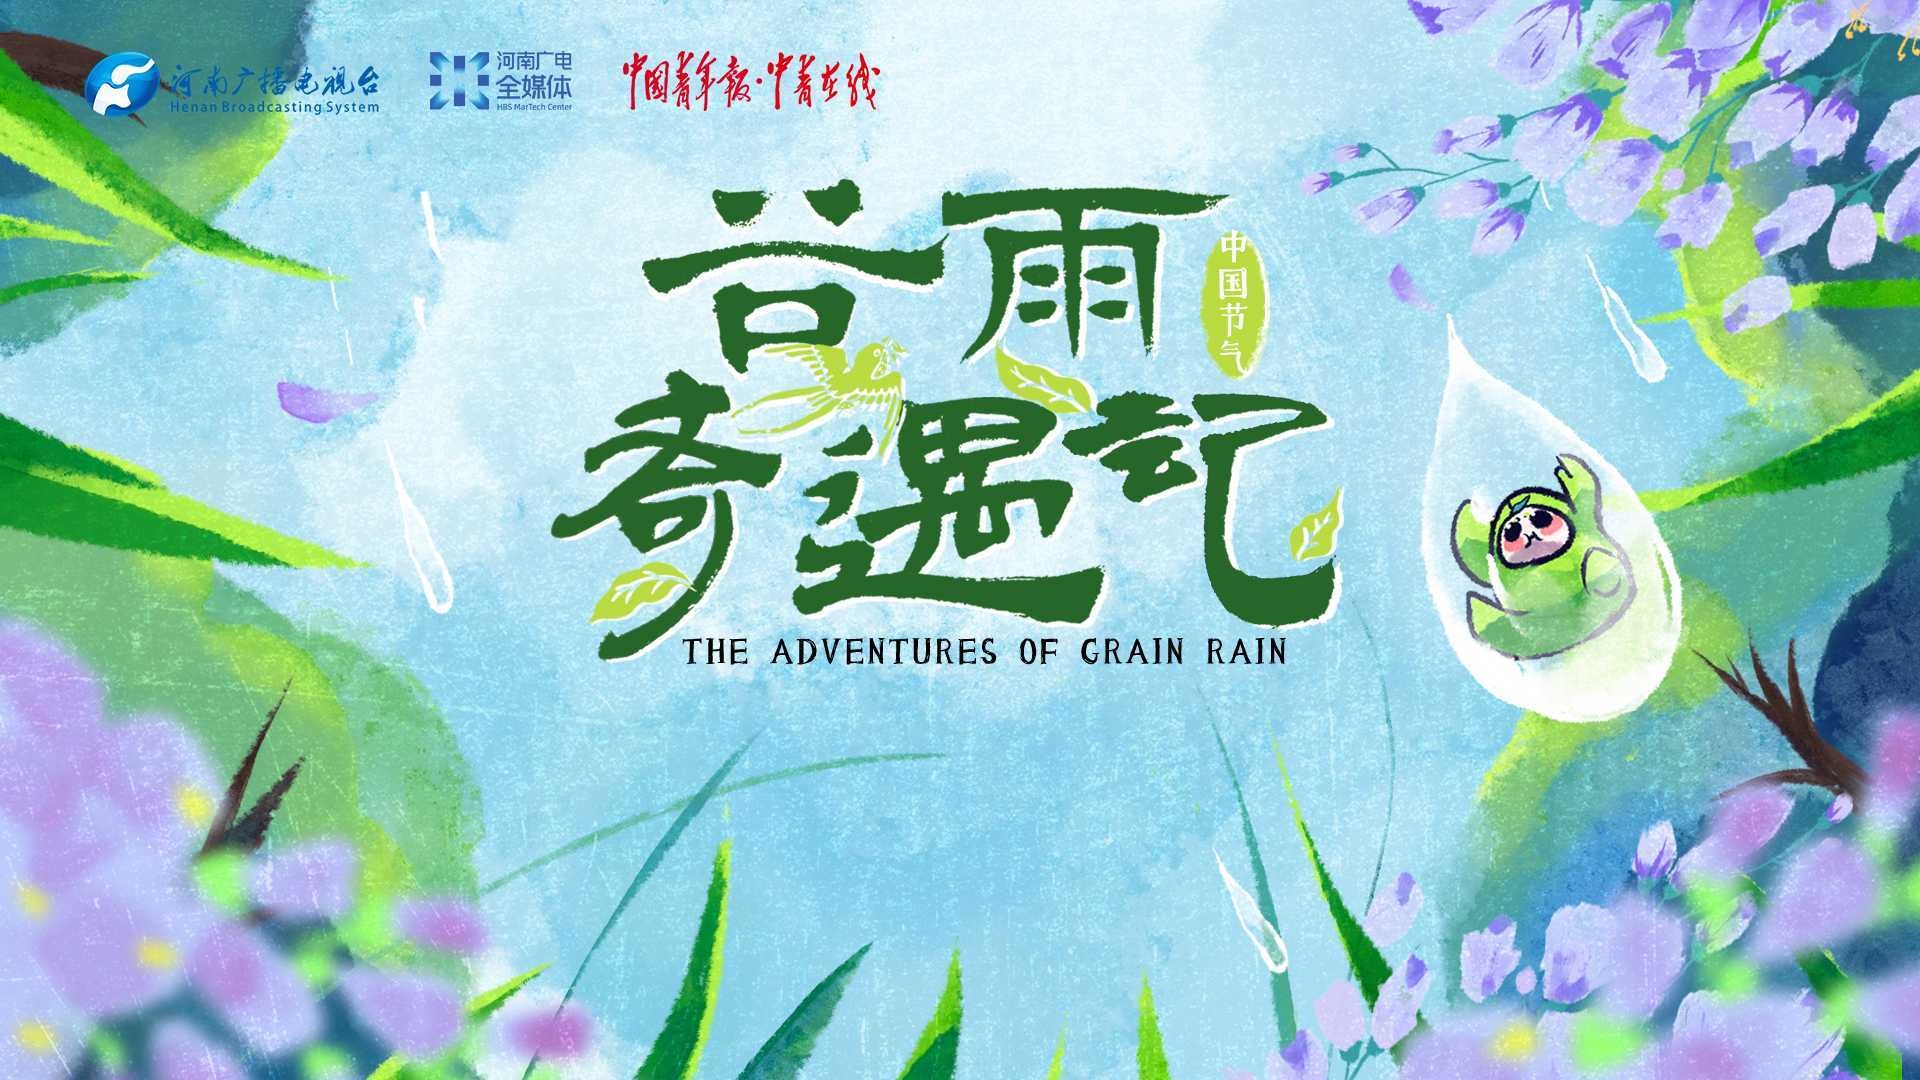 《谷雨奇遇记》-河南广播电视台“中国节气”系列节目